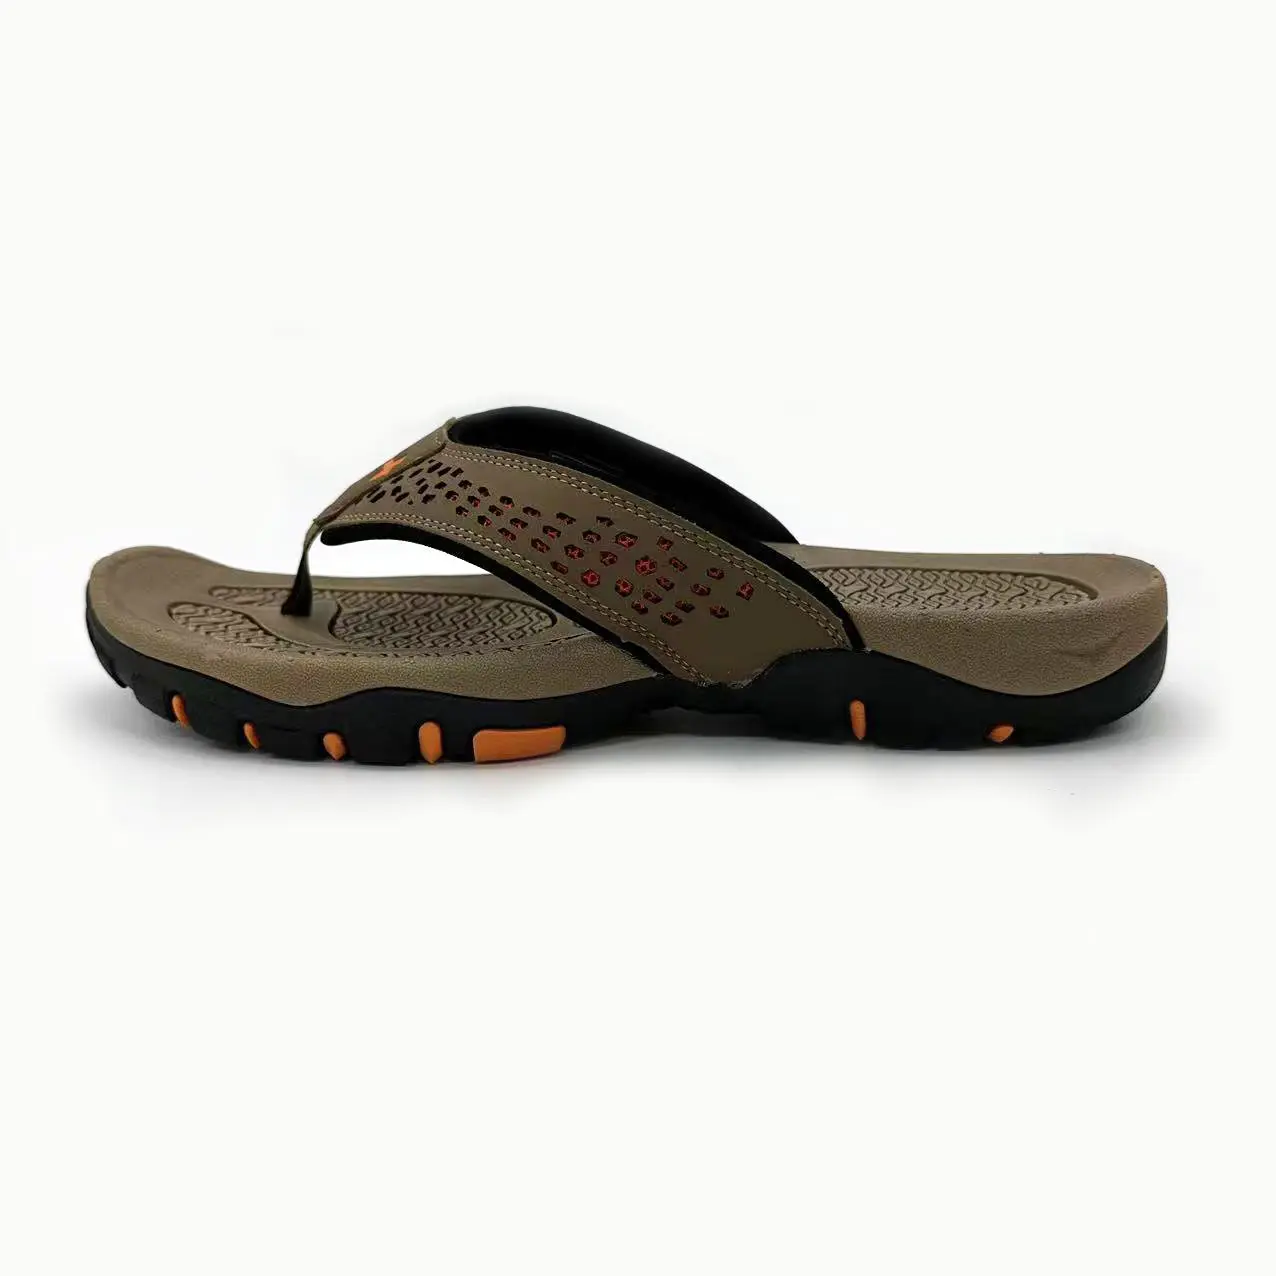 Wholesale men's slippers anti-skid Flip-flops for men Hot selling summer men's sandals.